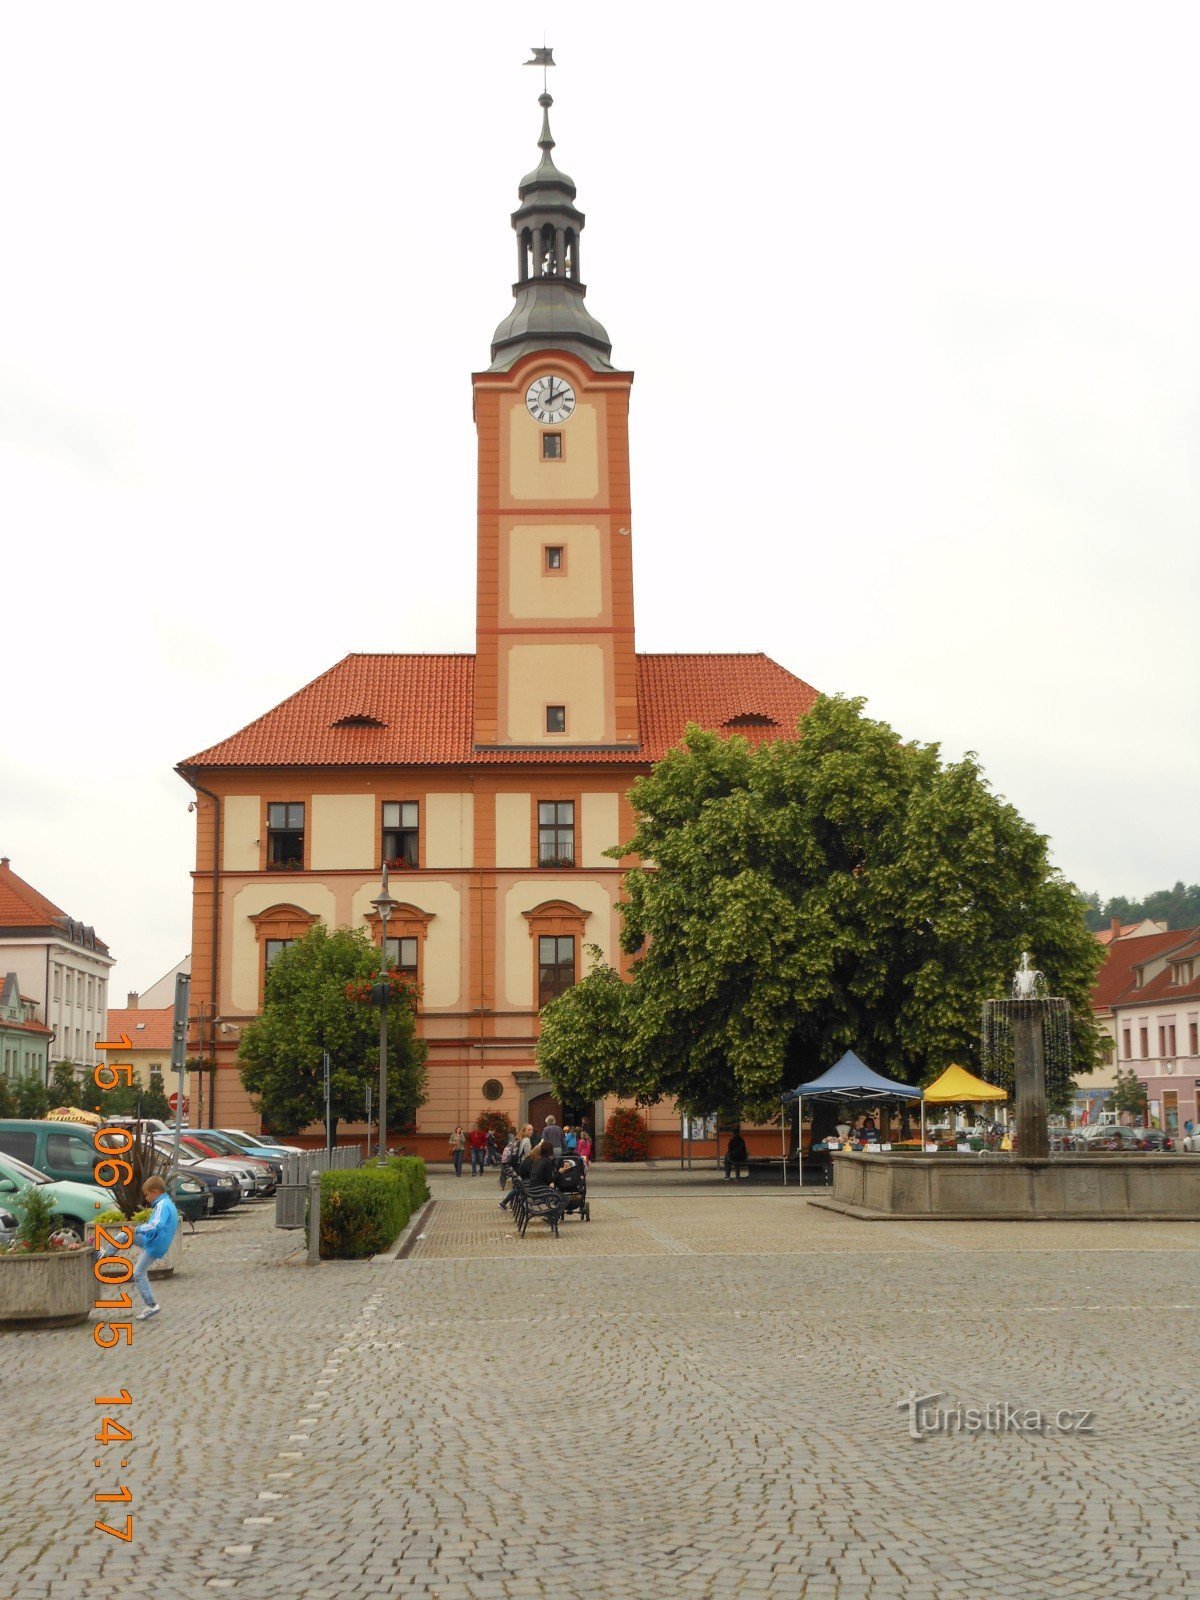 Το σιντριβάνι μπροστά από το κτίριο του δημαρχείου στο Sušice